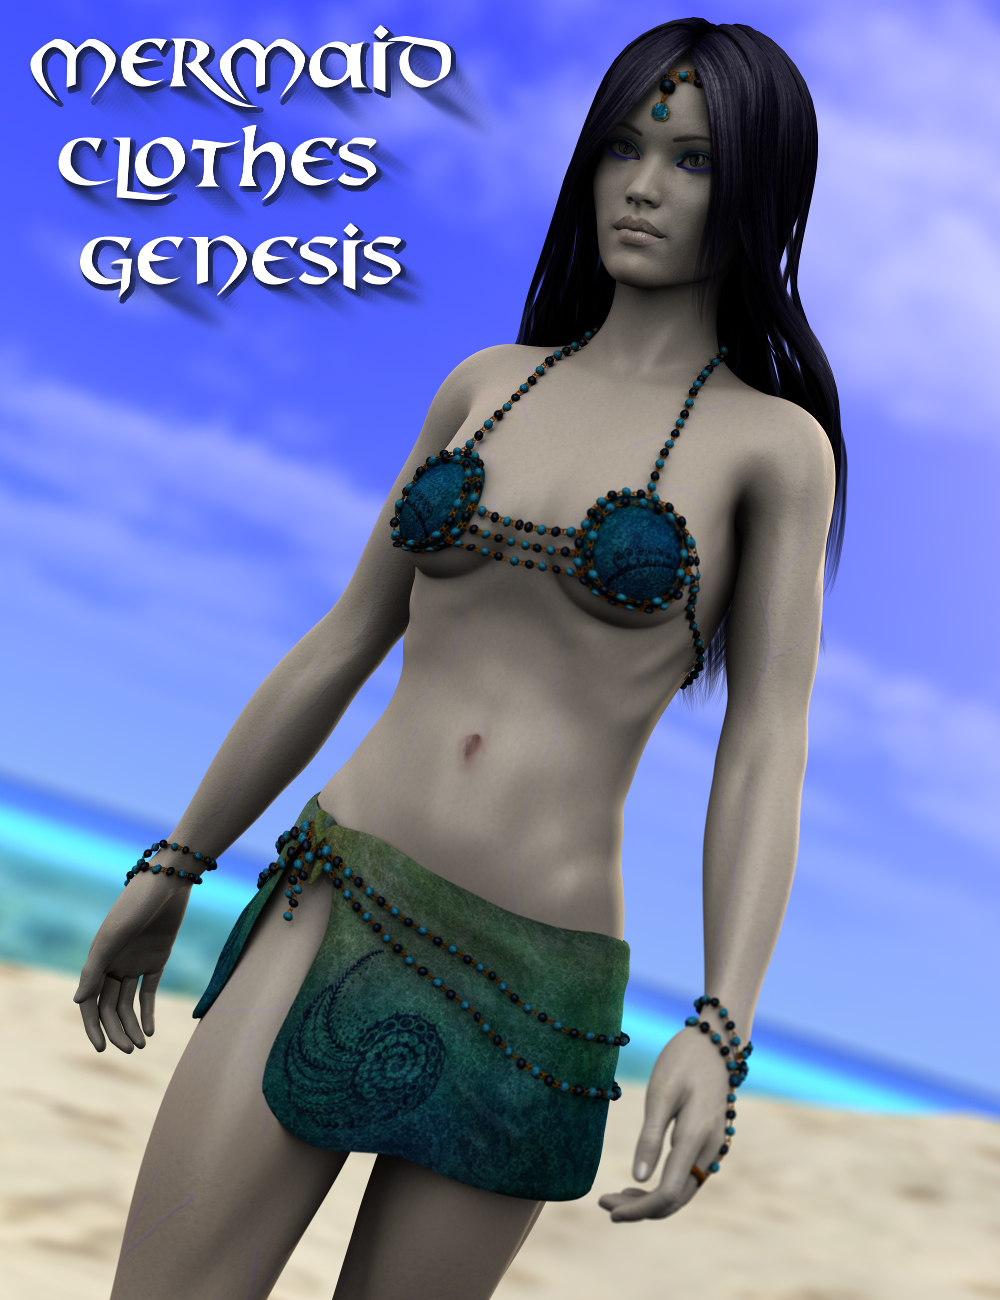 Mermaid Clothes Genesis by: FuselingSickleyield, 3D Models by Daz 3D